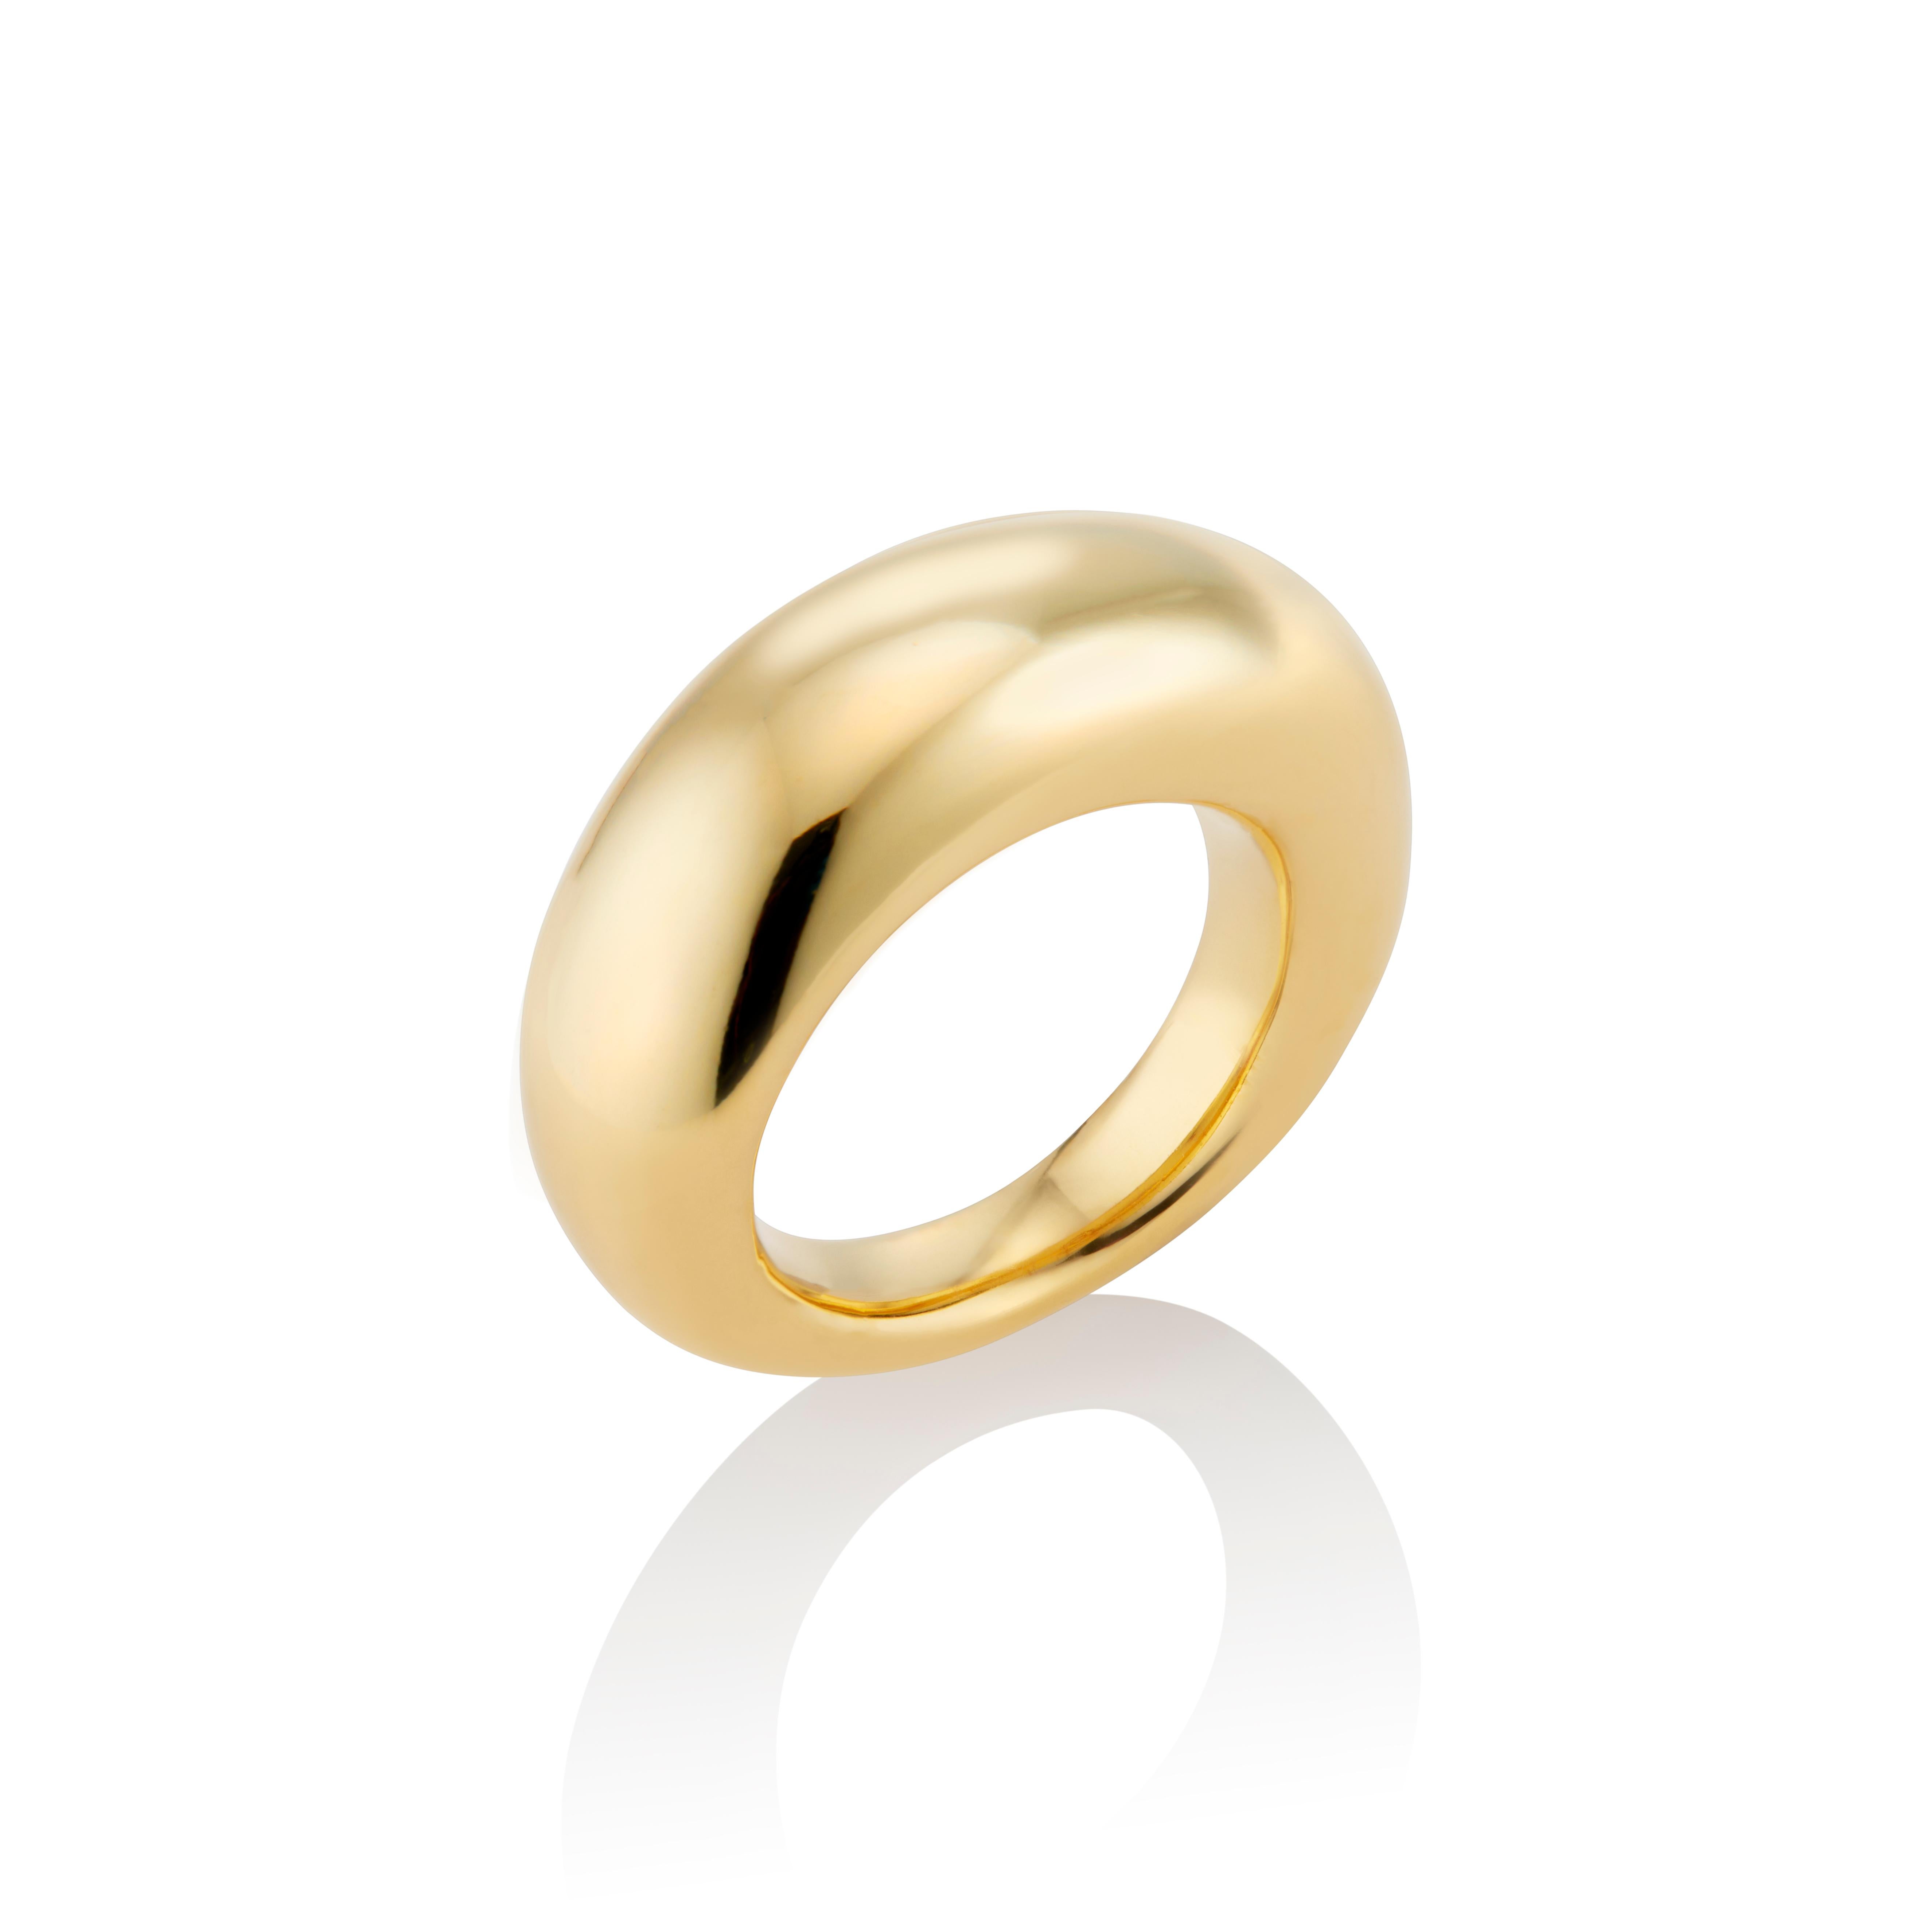 Este divertido Anillo Puff de Vermeil de Oro de 22 Kilates es una vuelta de tuerca a una forma clásica, diseñado para la amante de la joyería moderna que aprecia las piezas atemporales con un toque sofisticado.  

Talla 6,5- La talla del anillo es